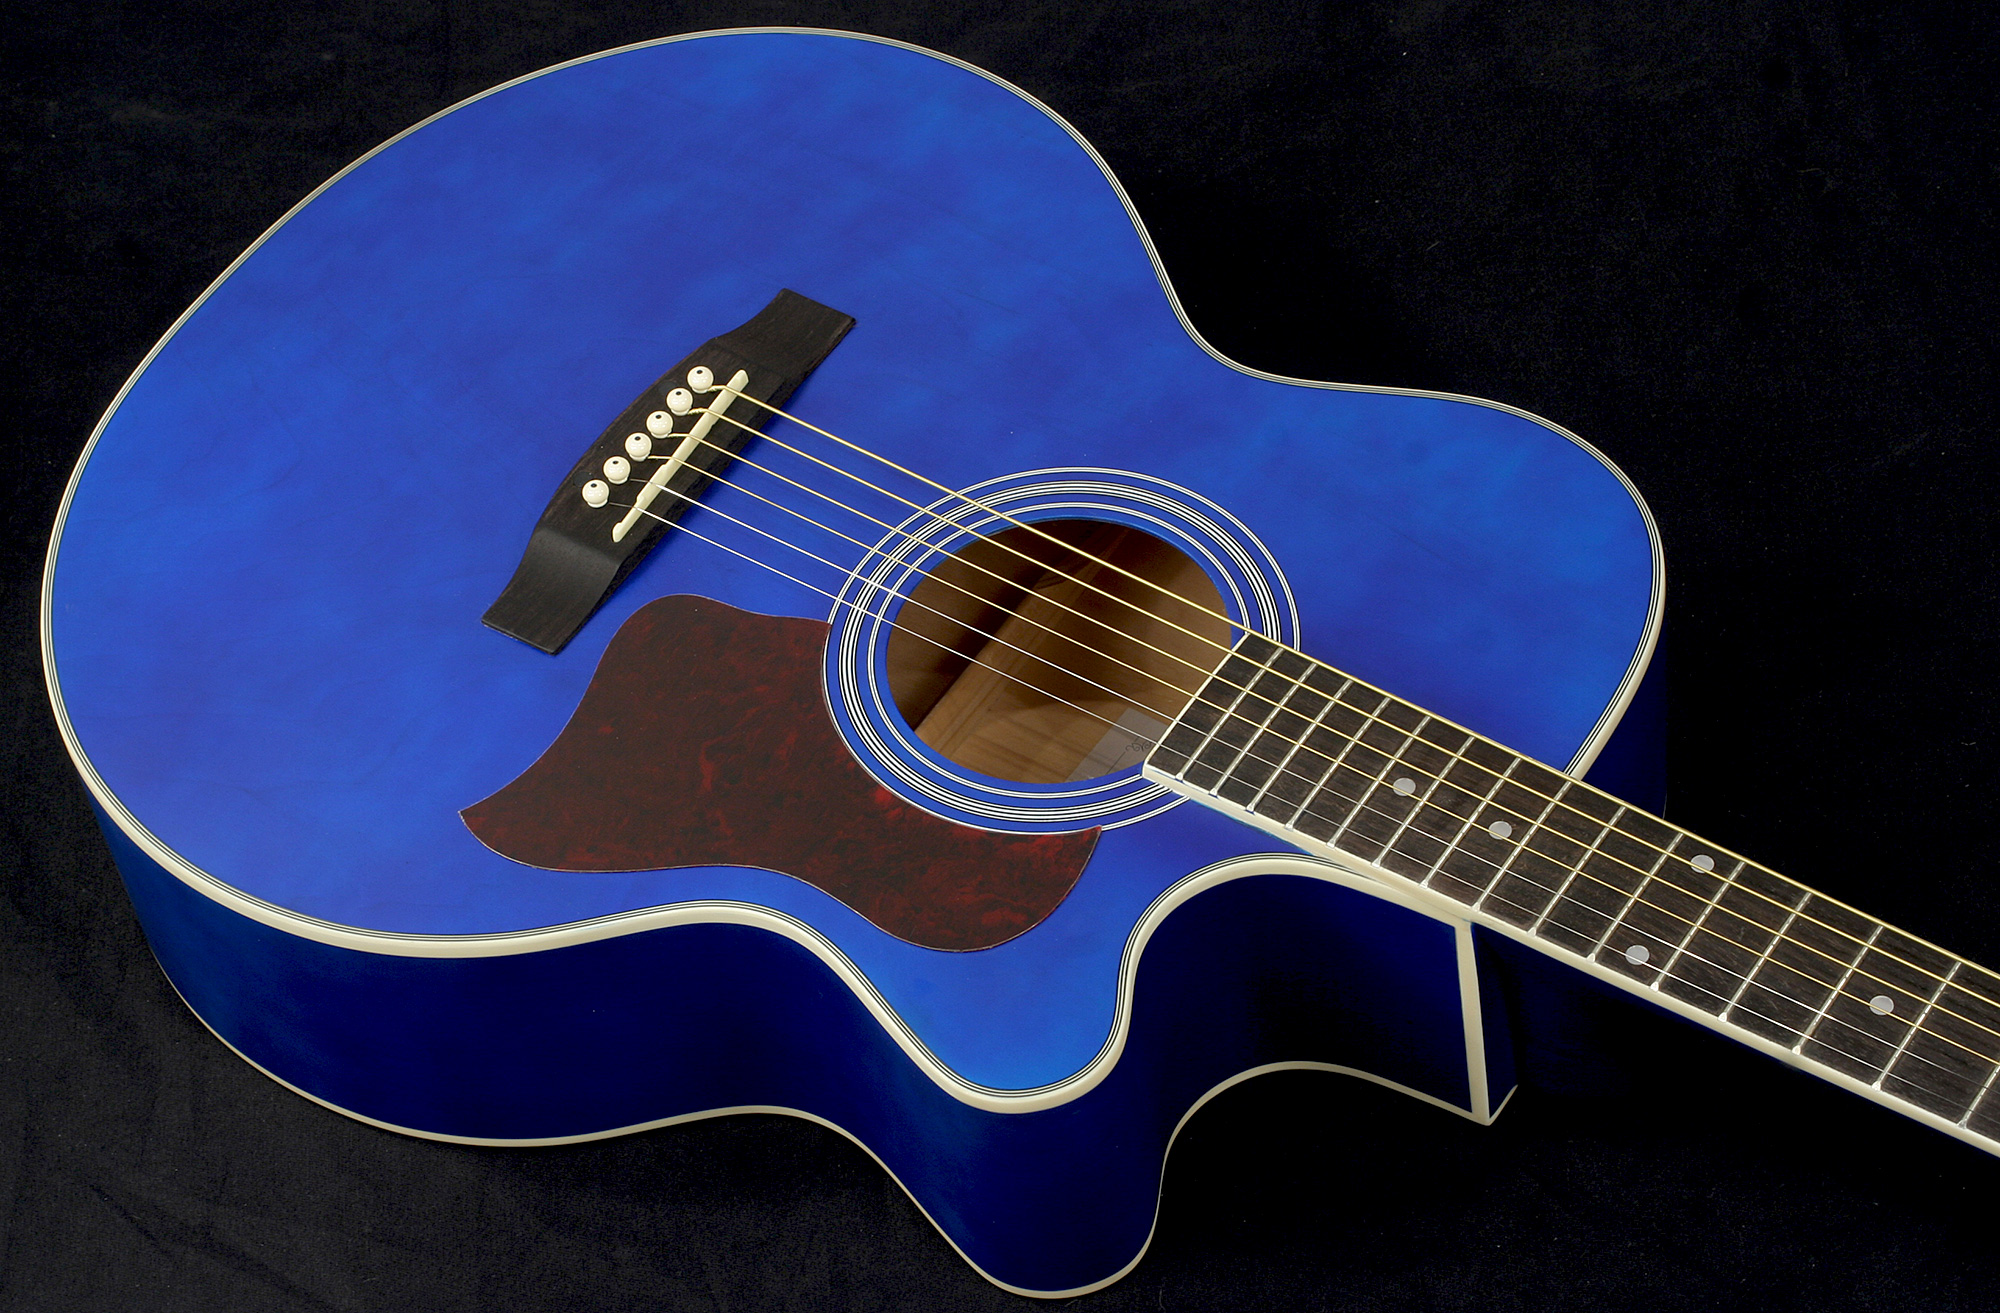 Eastone Sb20c-blu - Blue - Guitarra acústica & electro - Variation 1